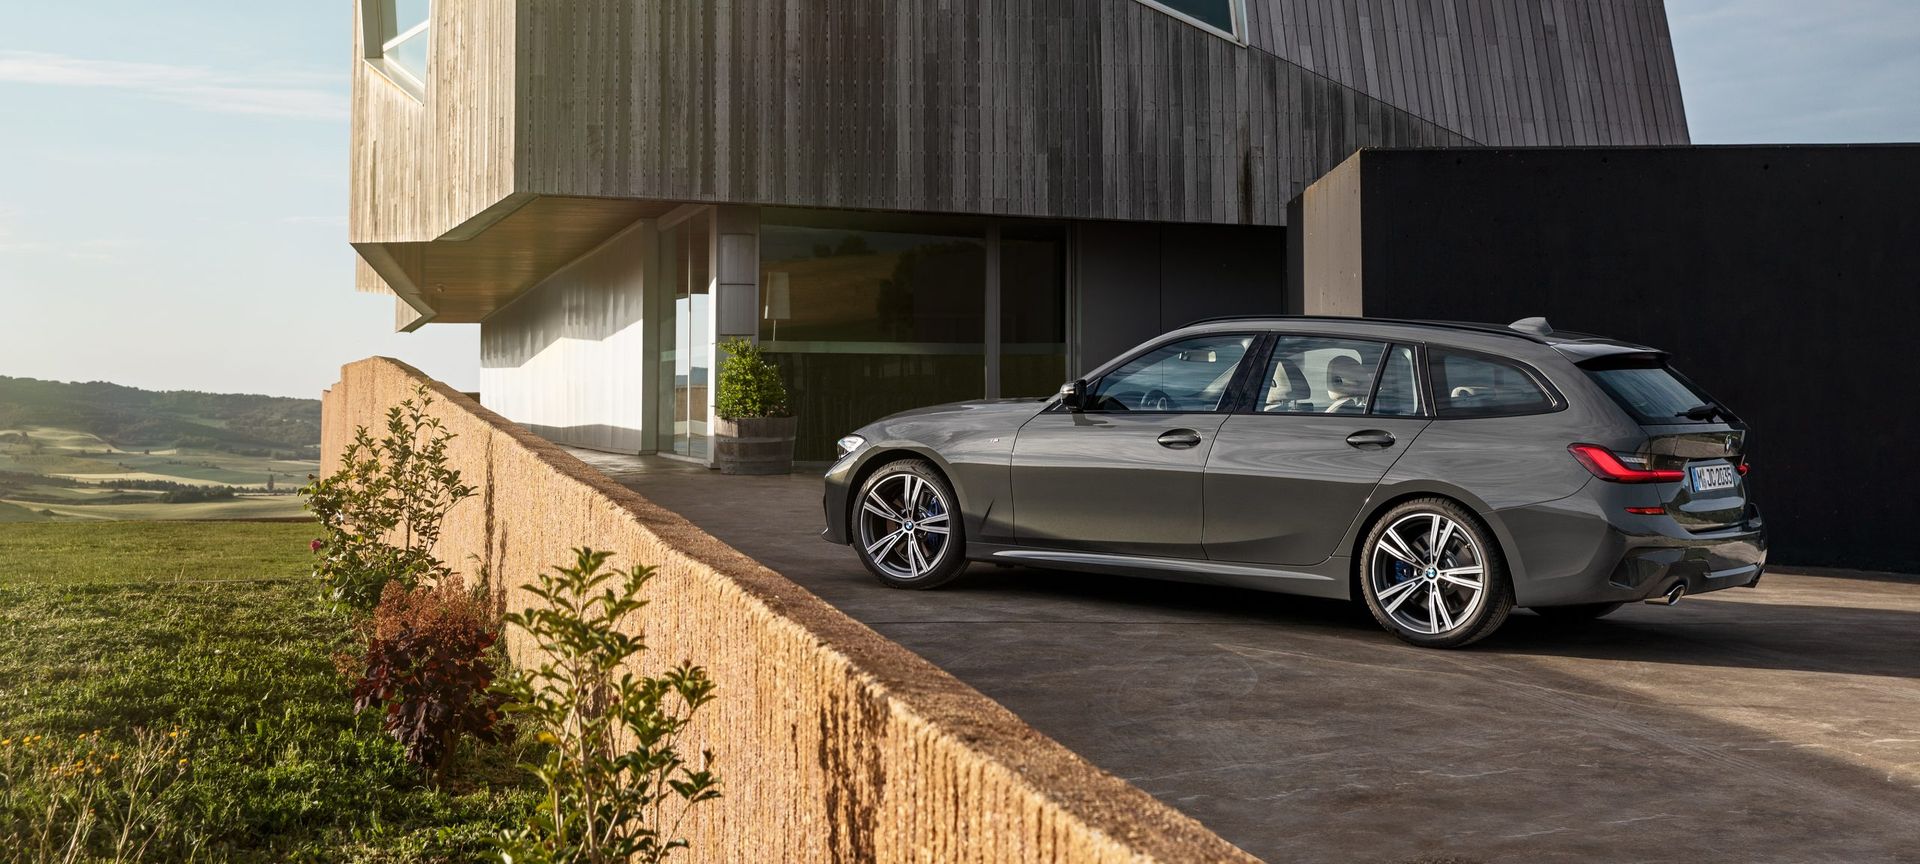 Już wiemy, jak wygląda nowe BMW serii 3 Touring